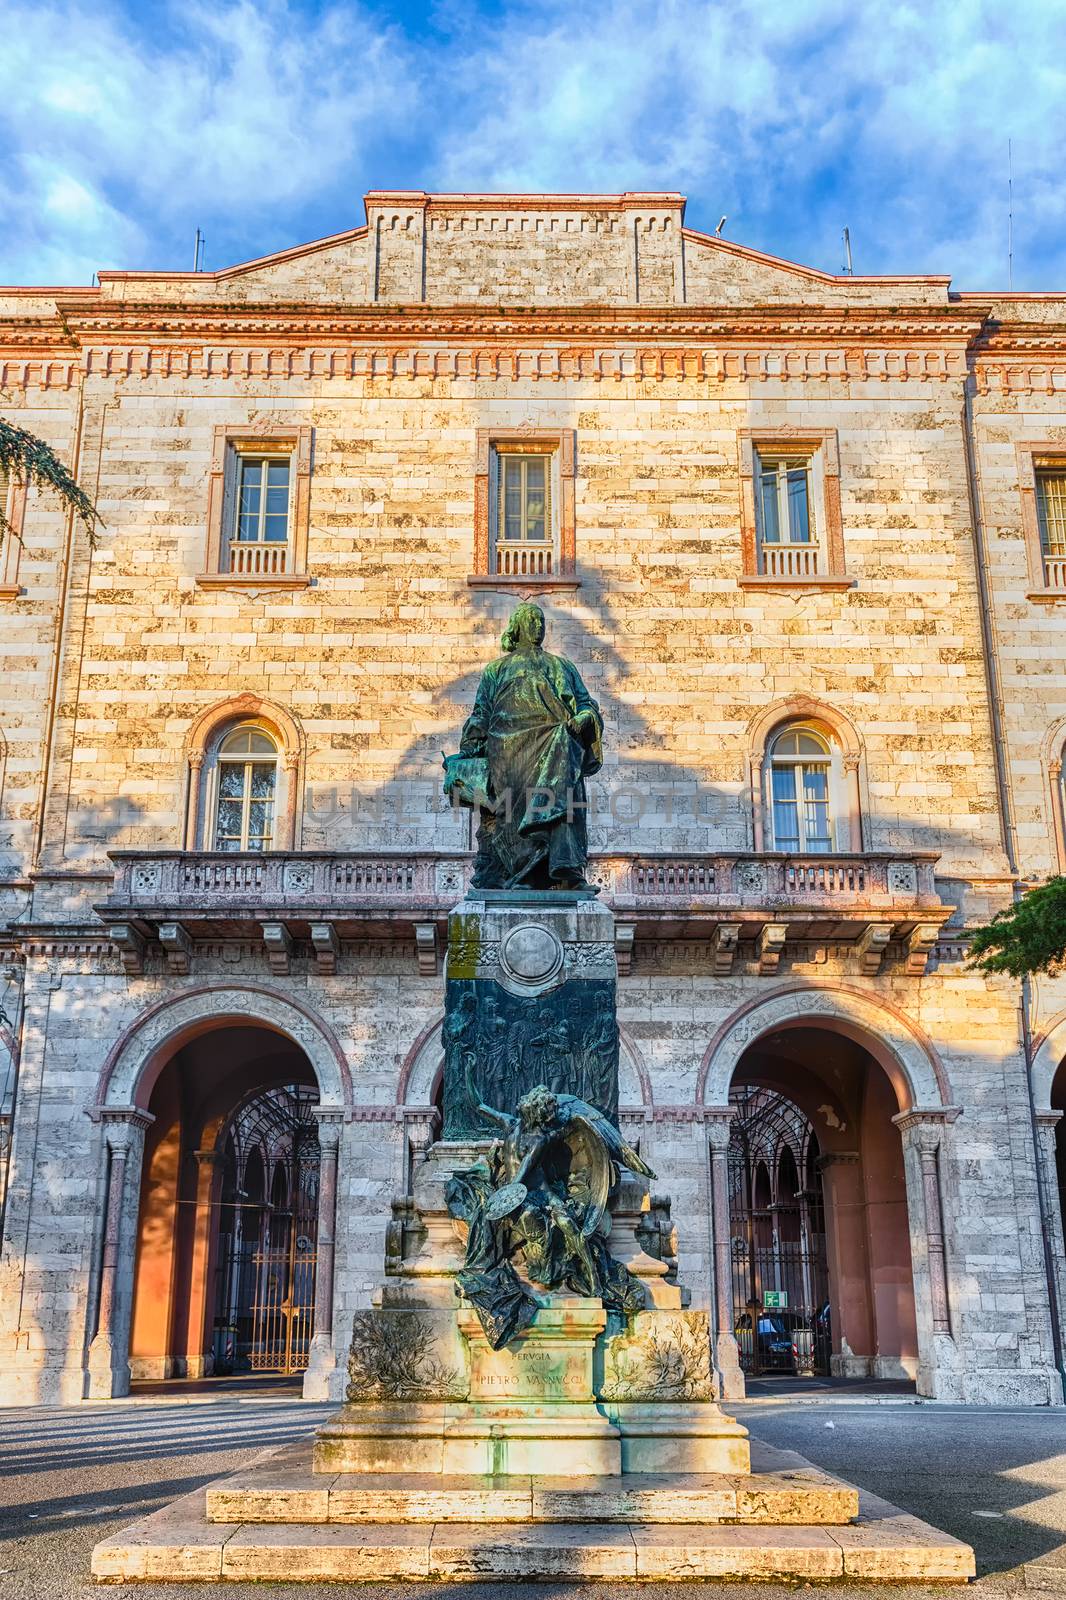 Statue of Pietro Vannucci also known as Perugino, Perugia, Italy by marcorubino